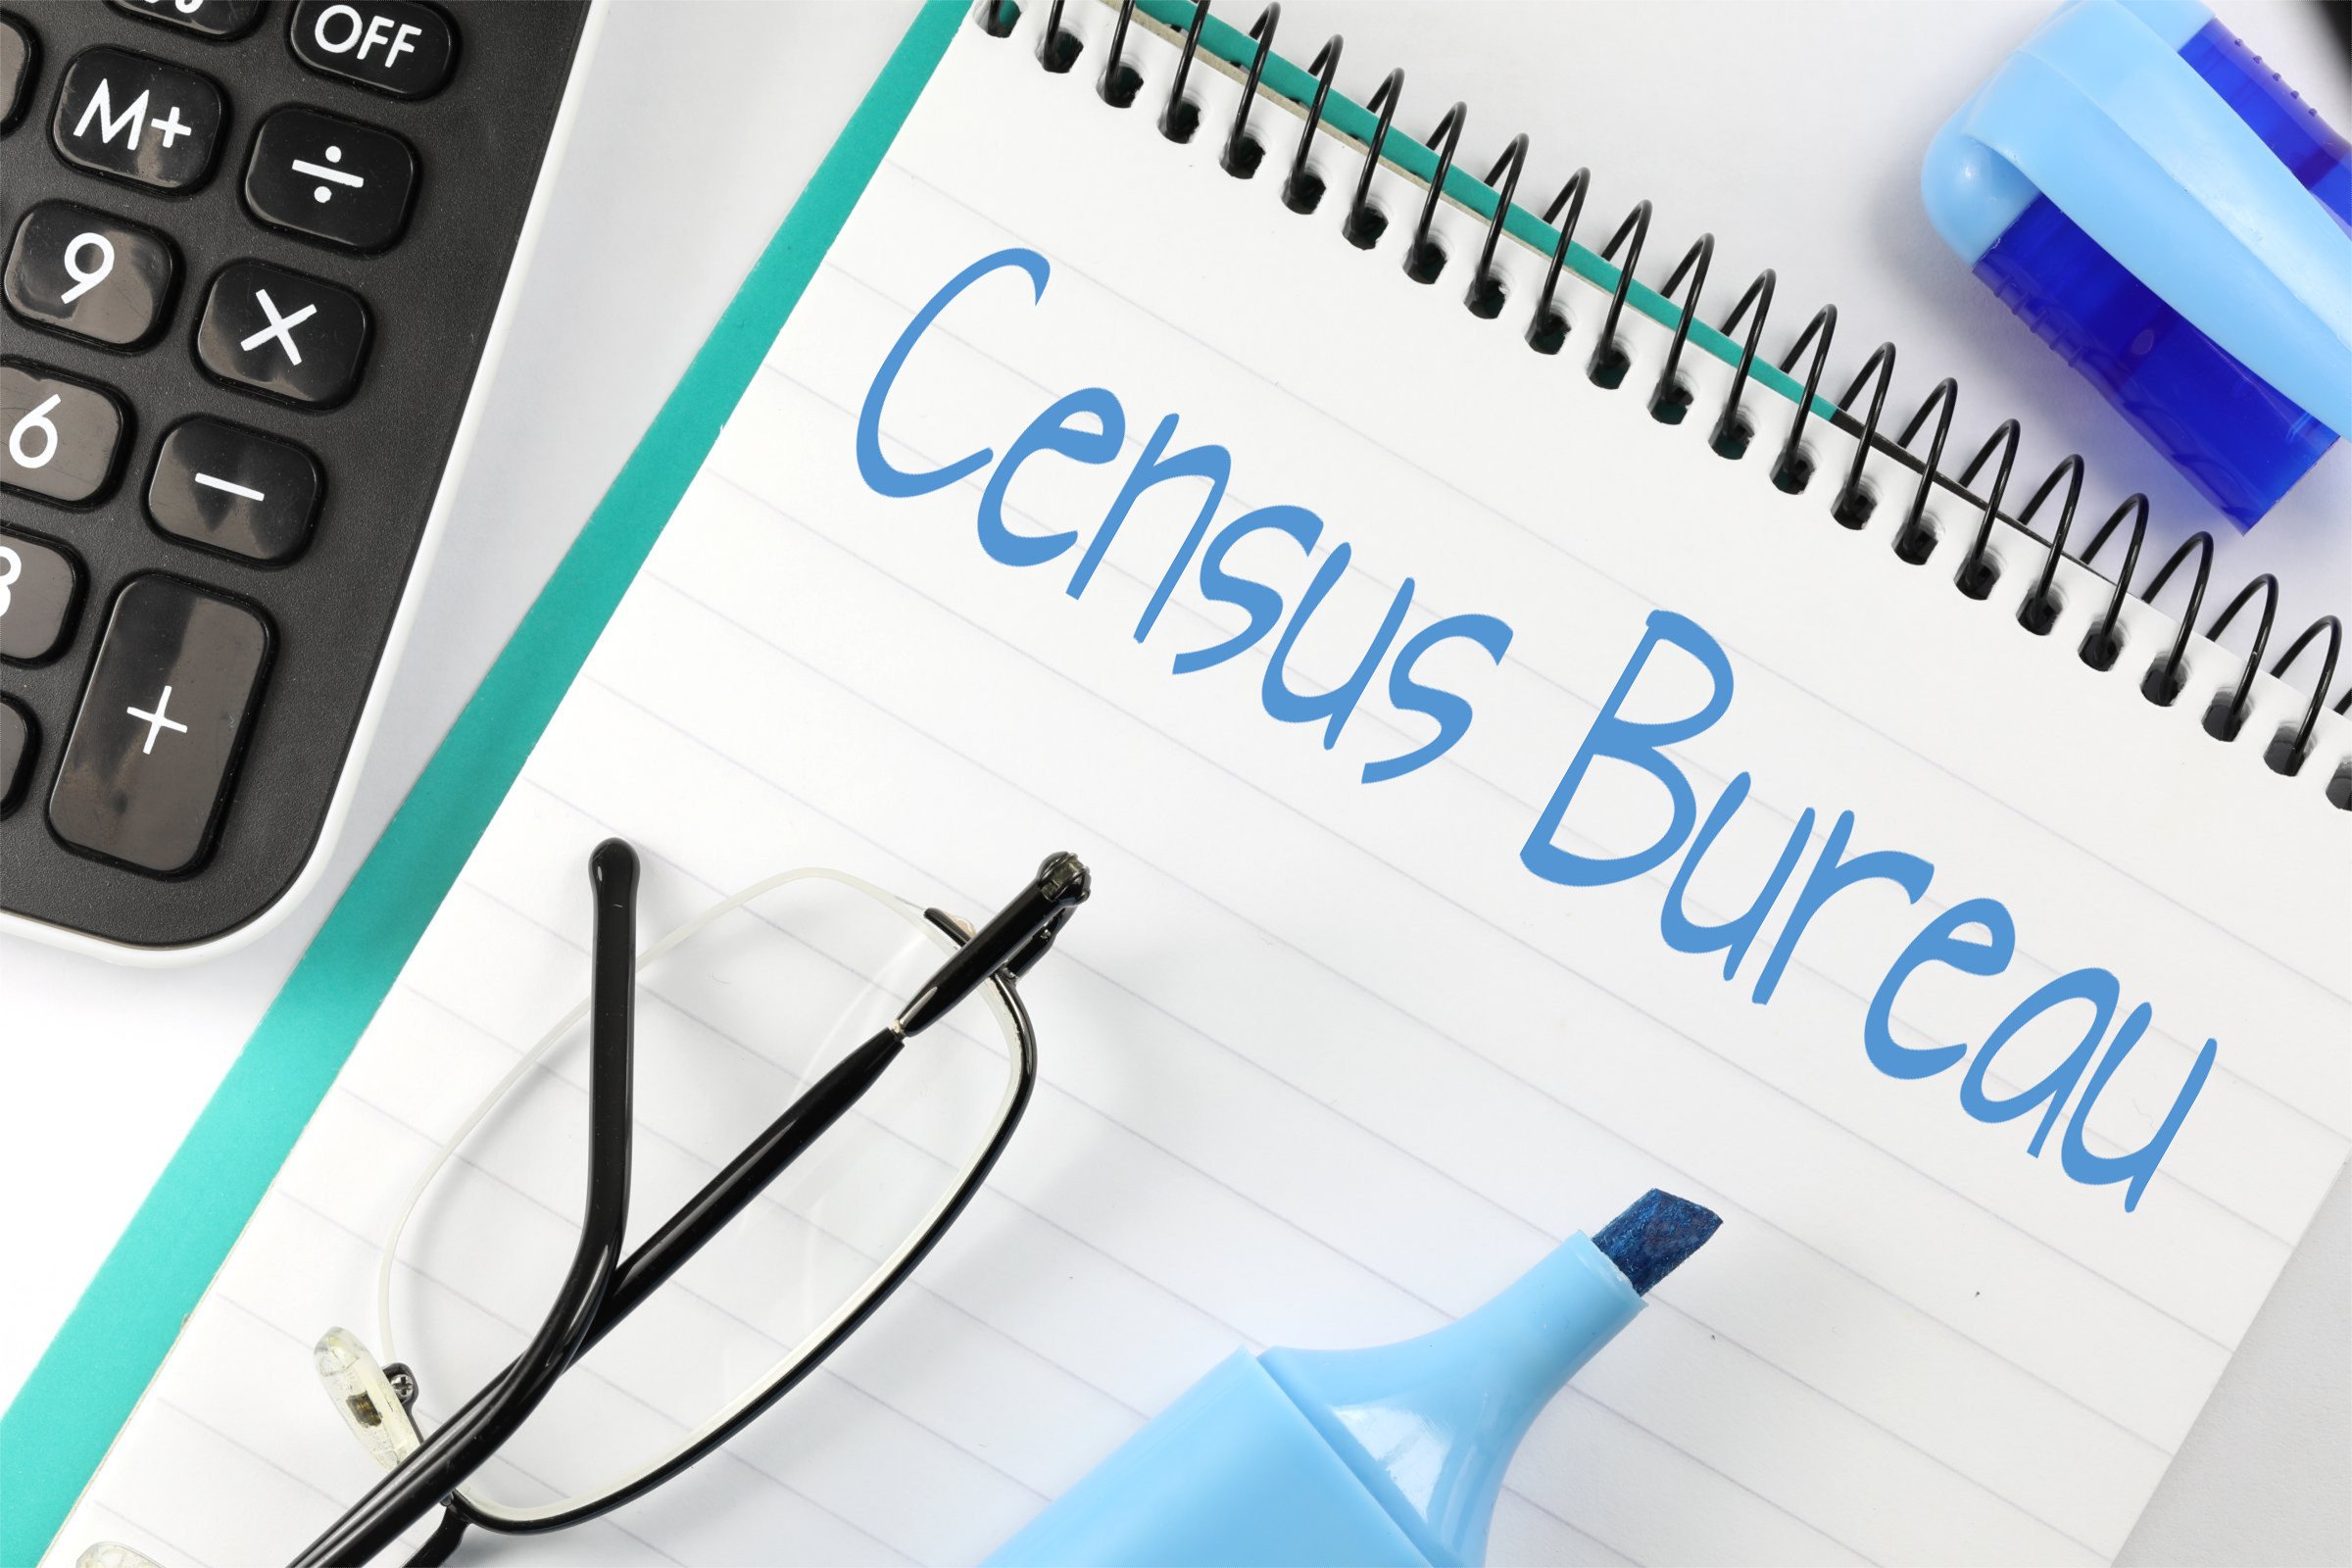 census bureau